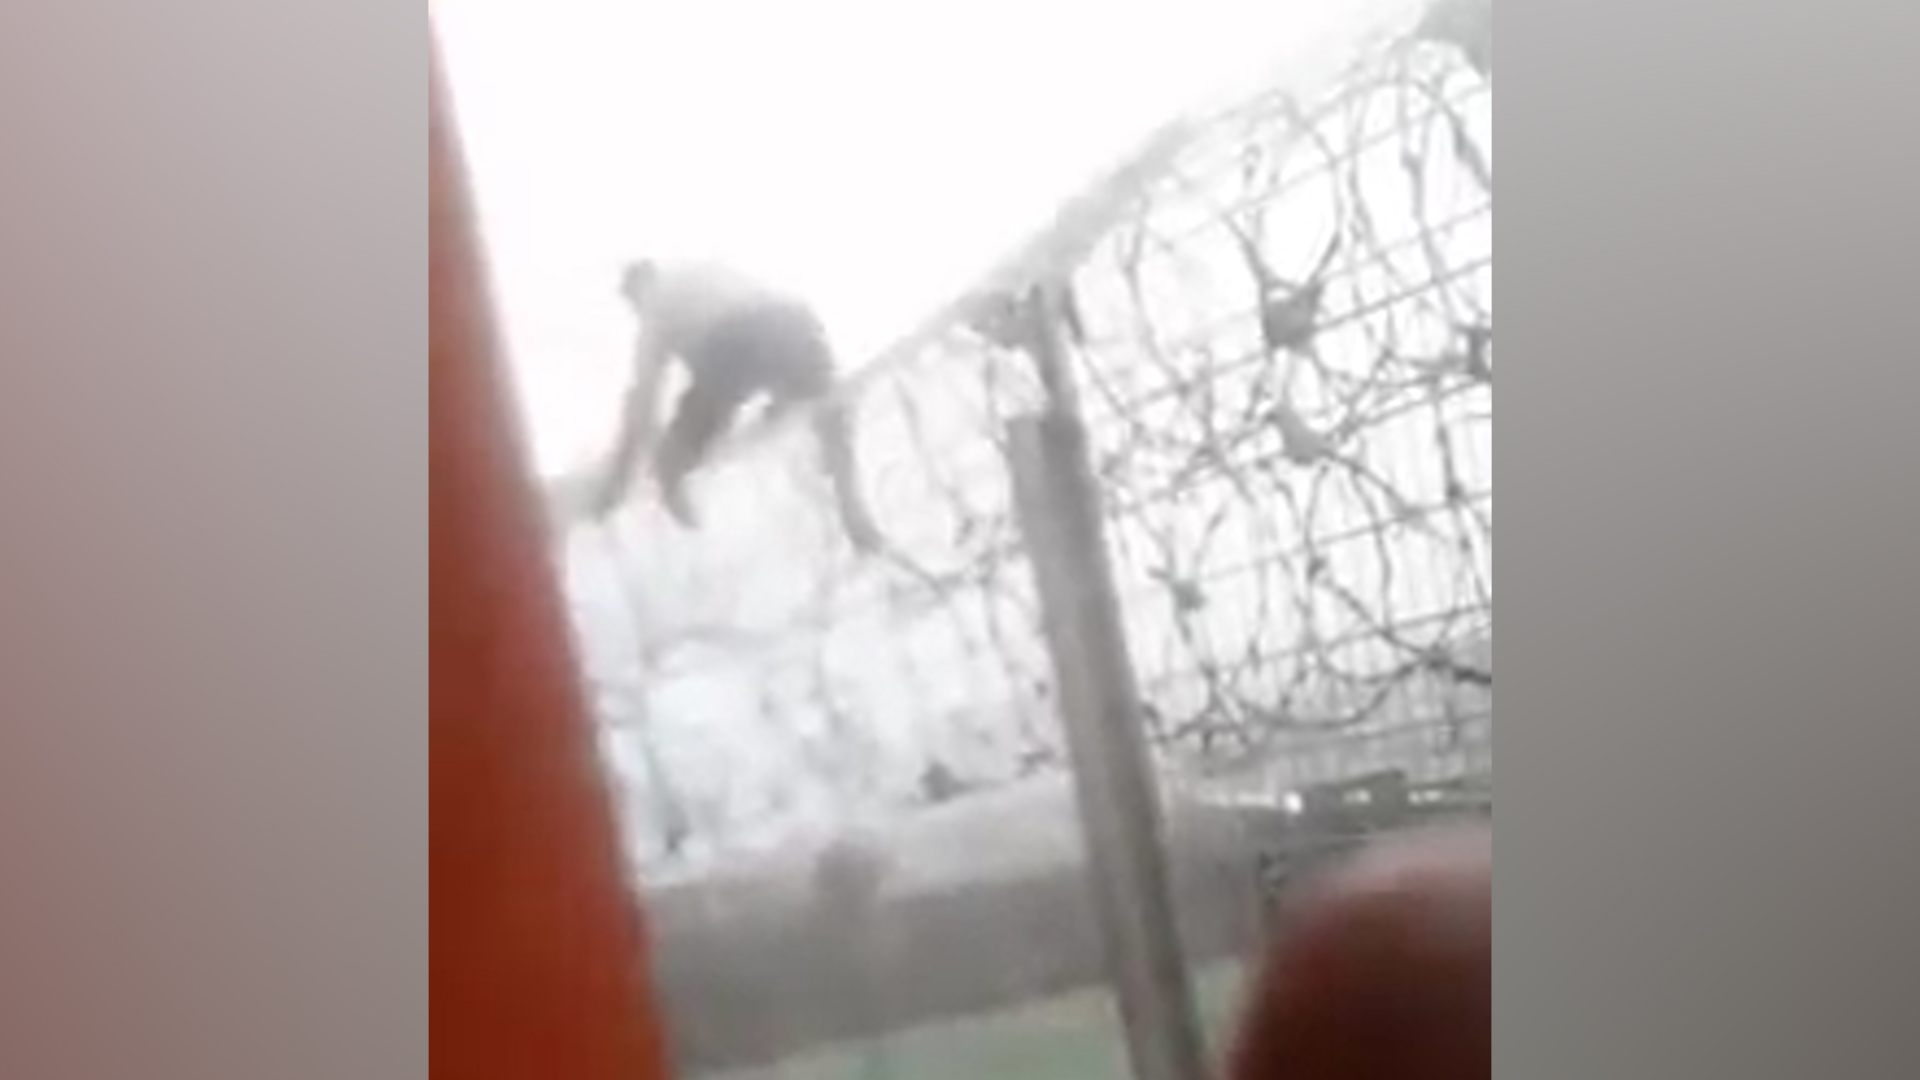 Vidéo - Un homme escalade le grillage de la prison de Domenjod